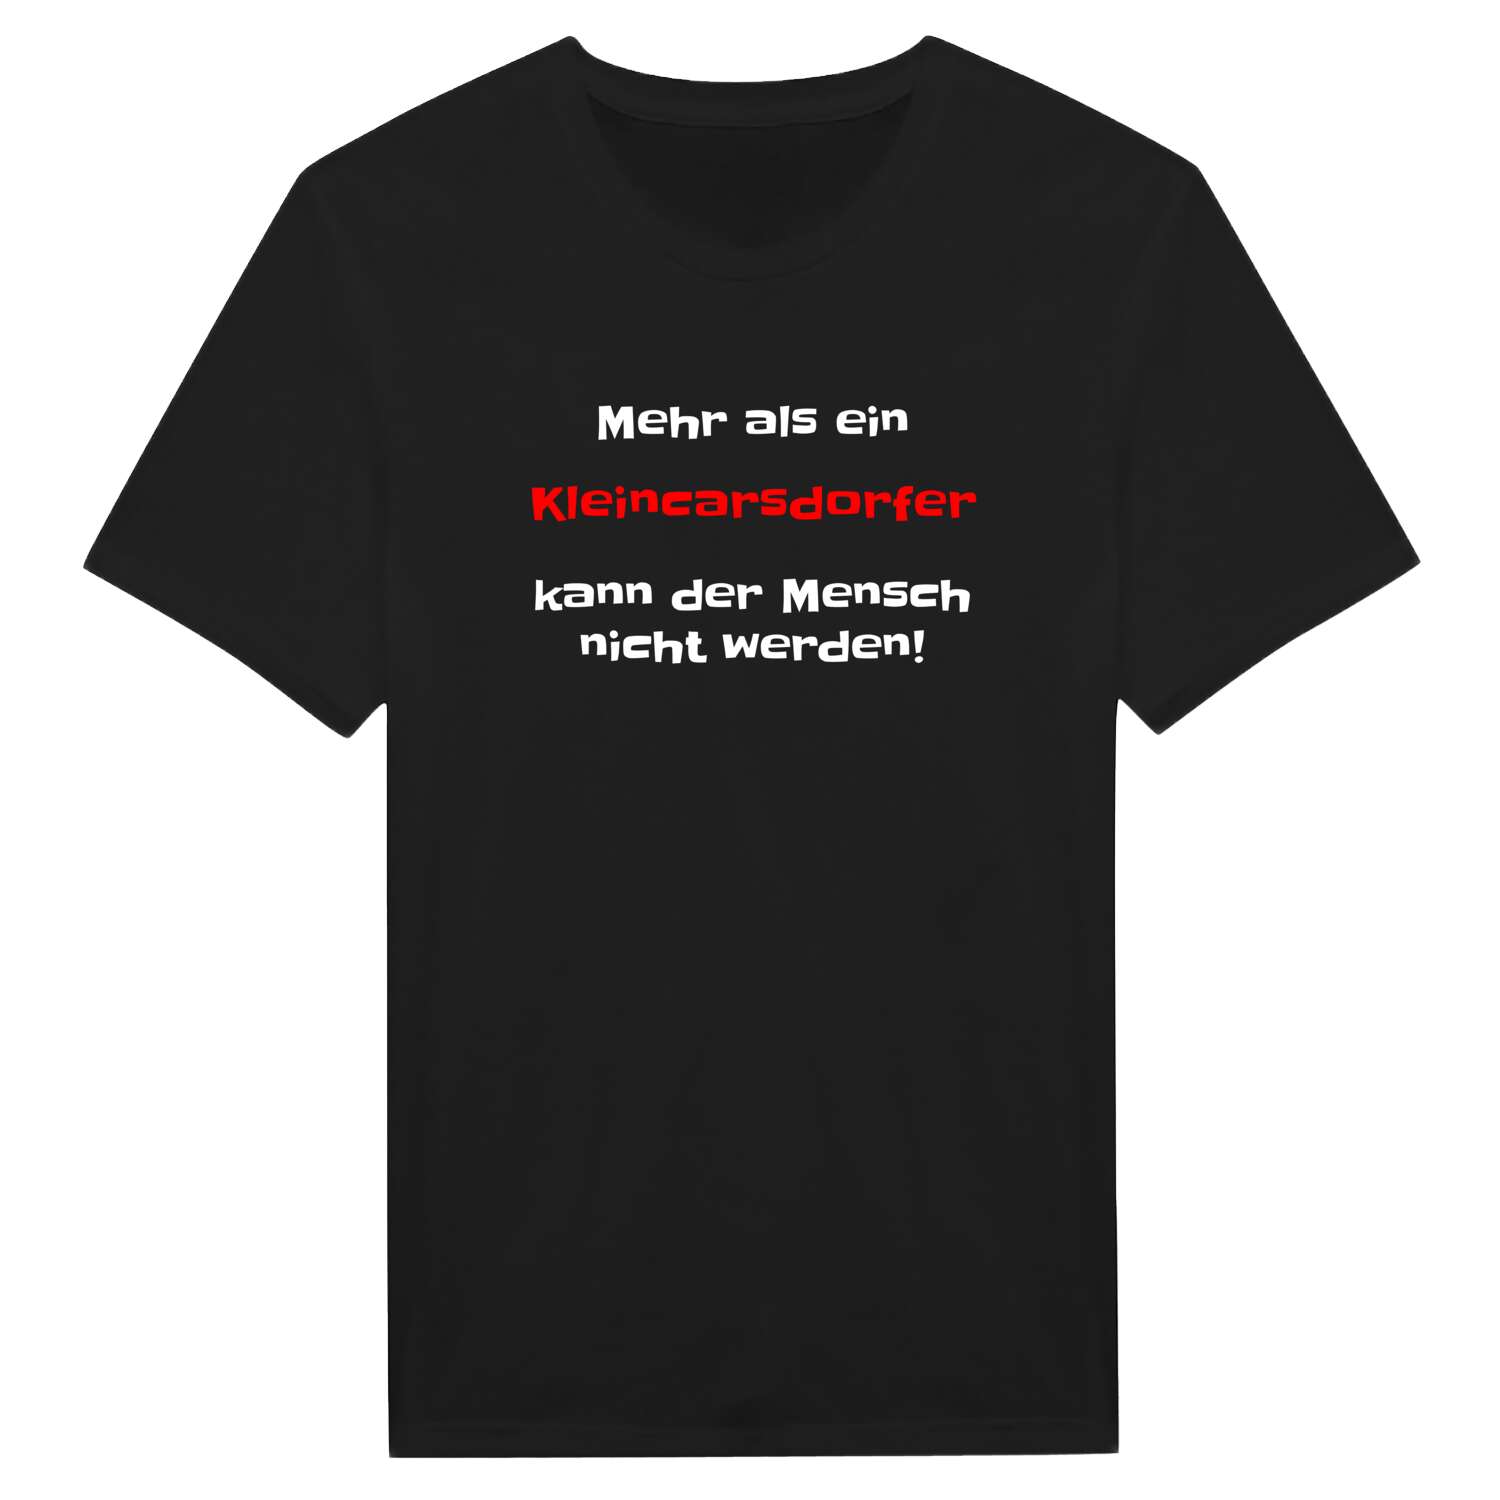 Kleincarsdorf T-Shirt »Mehr als ein«